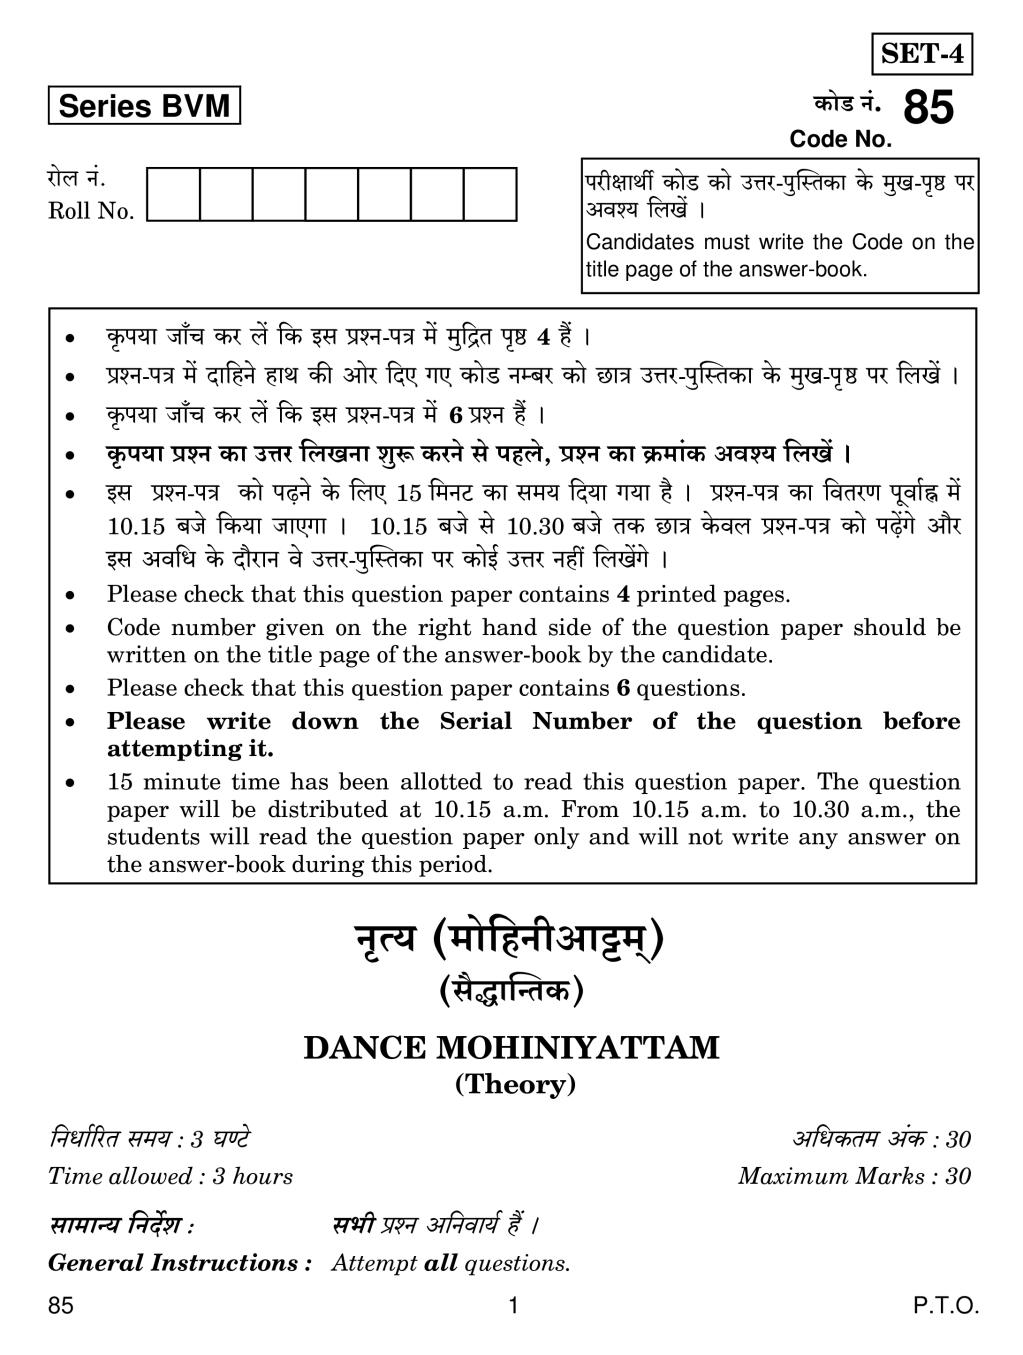 CBSE Class 12 Dance Mohiniyattam Question Paper 2019 - Page 1